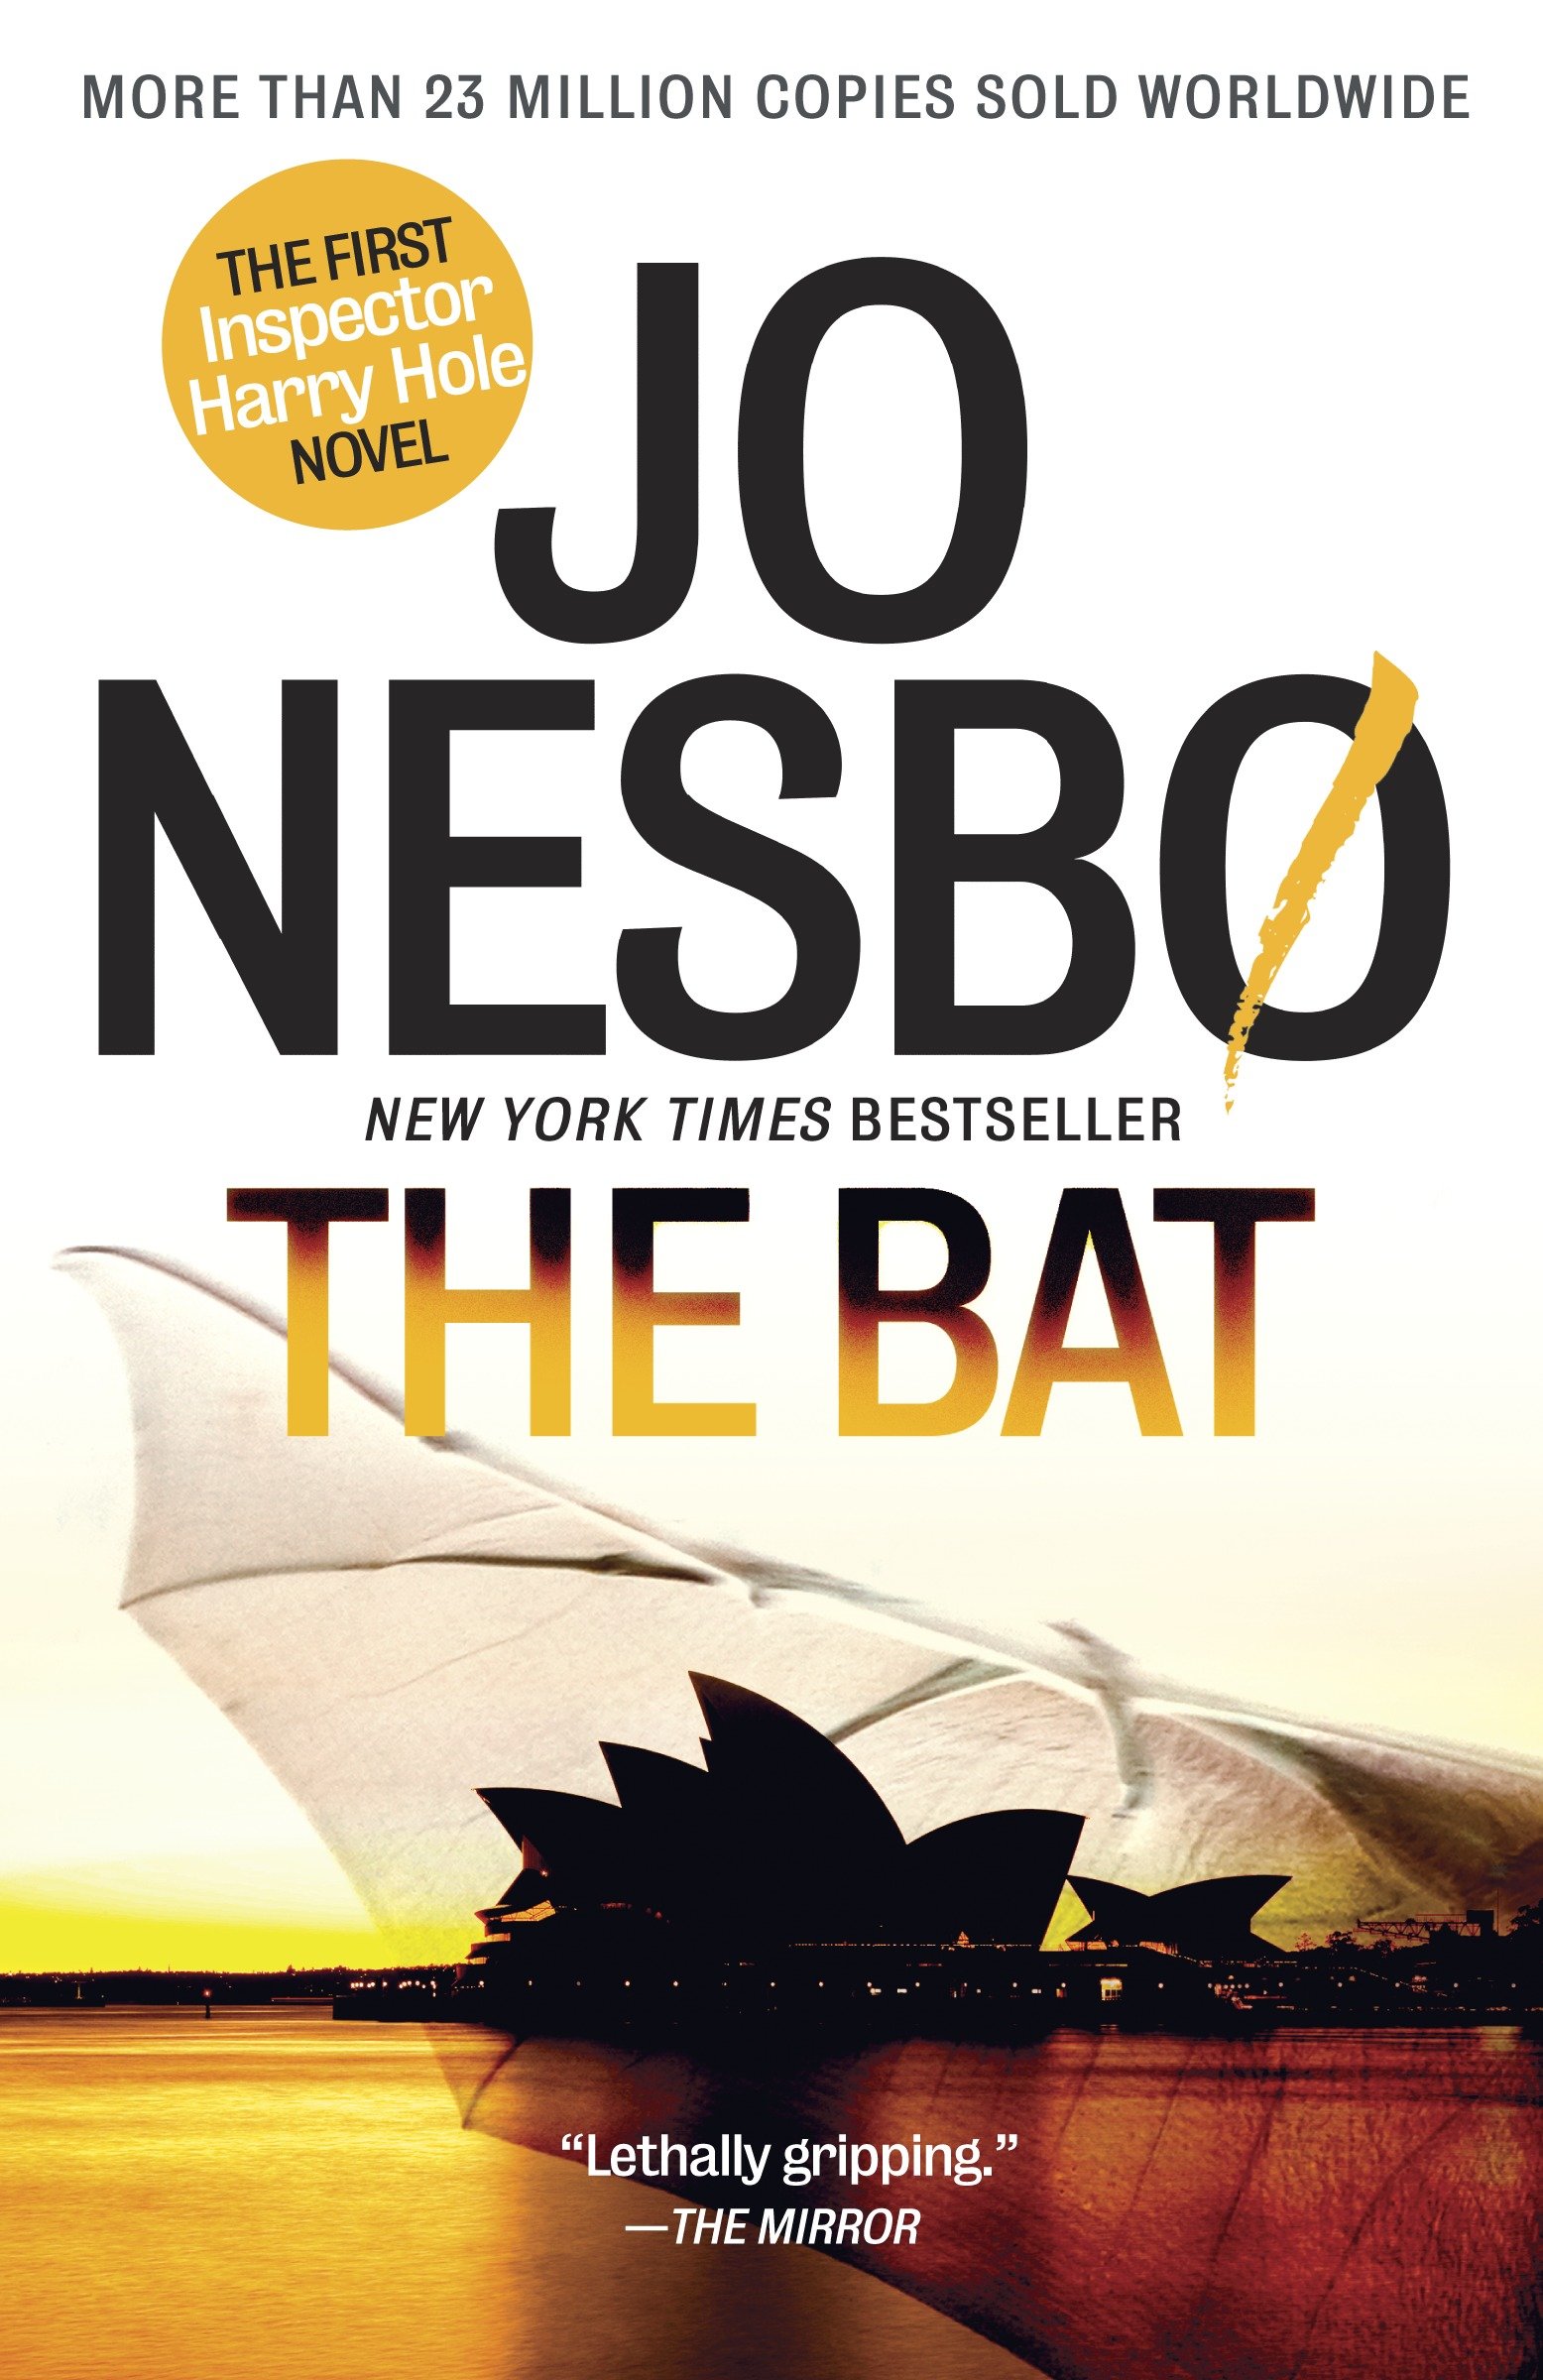 Crime novelist Jo Nesbø: Have I experienced addiction? Yes